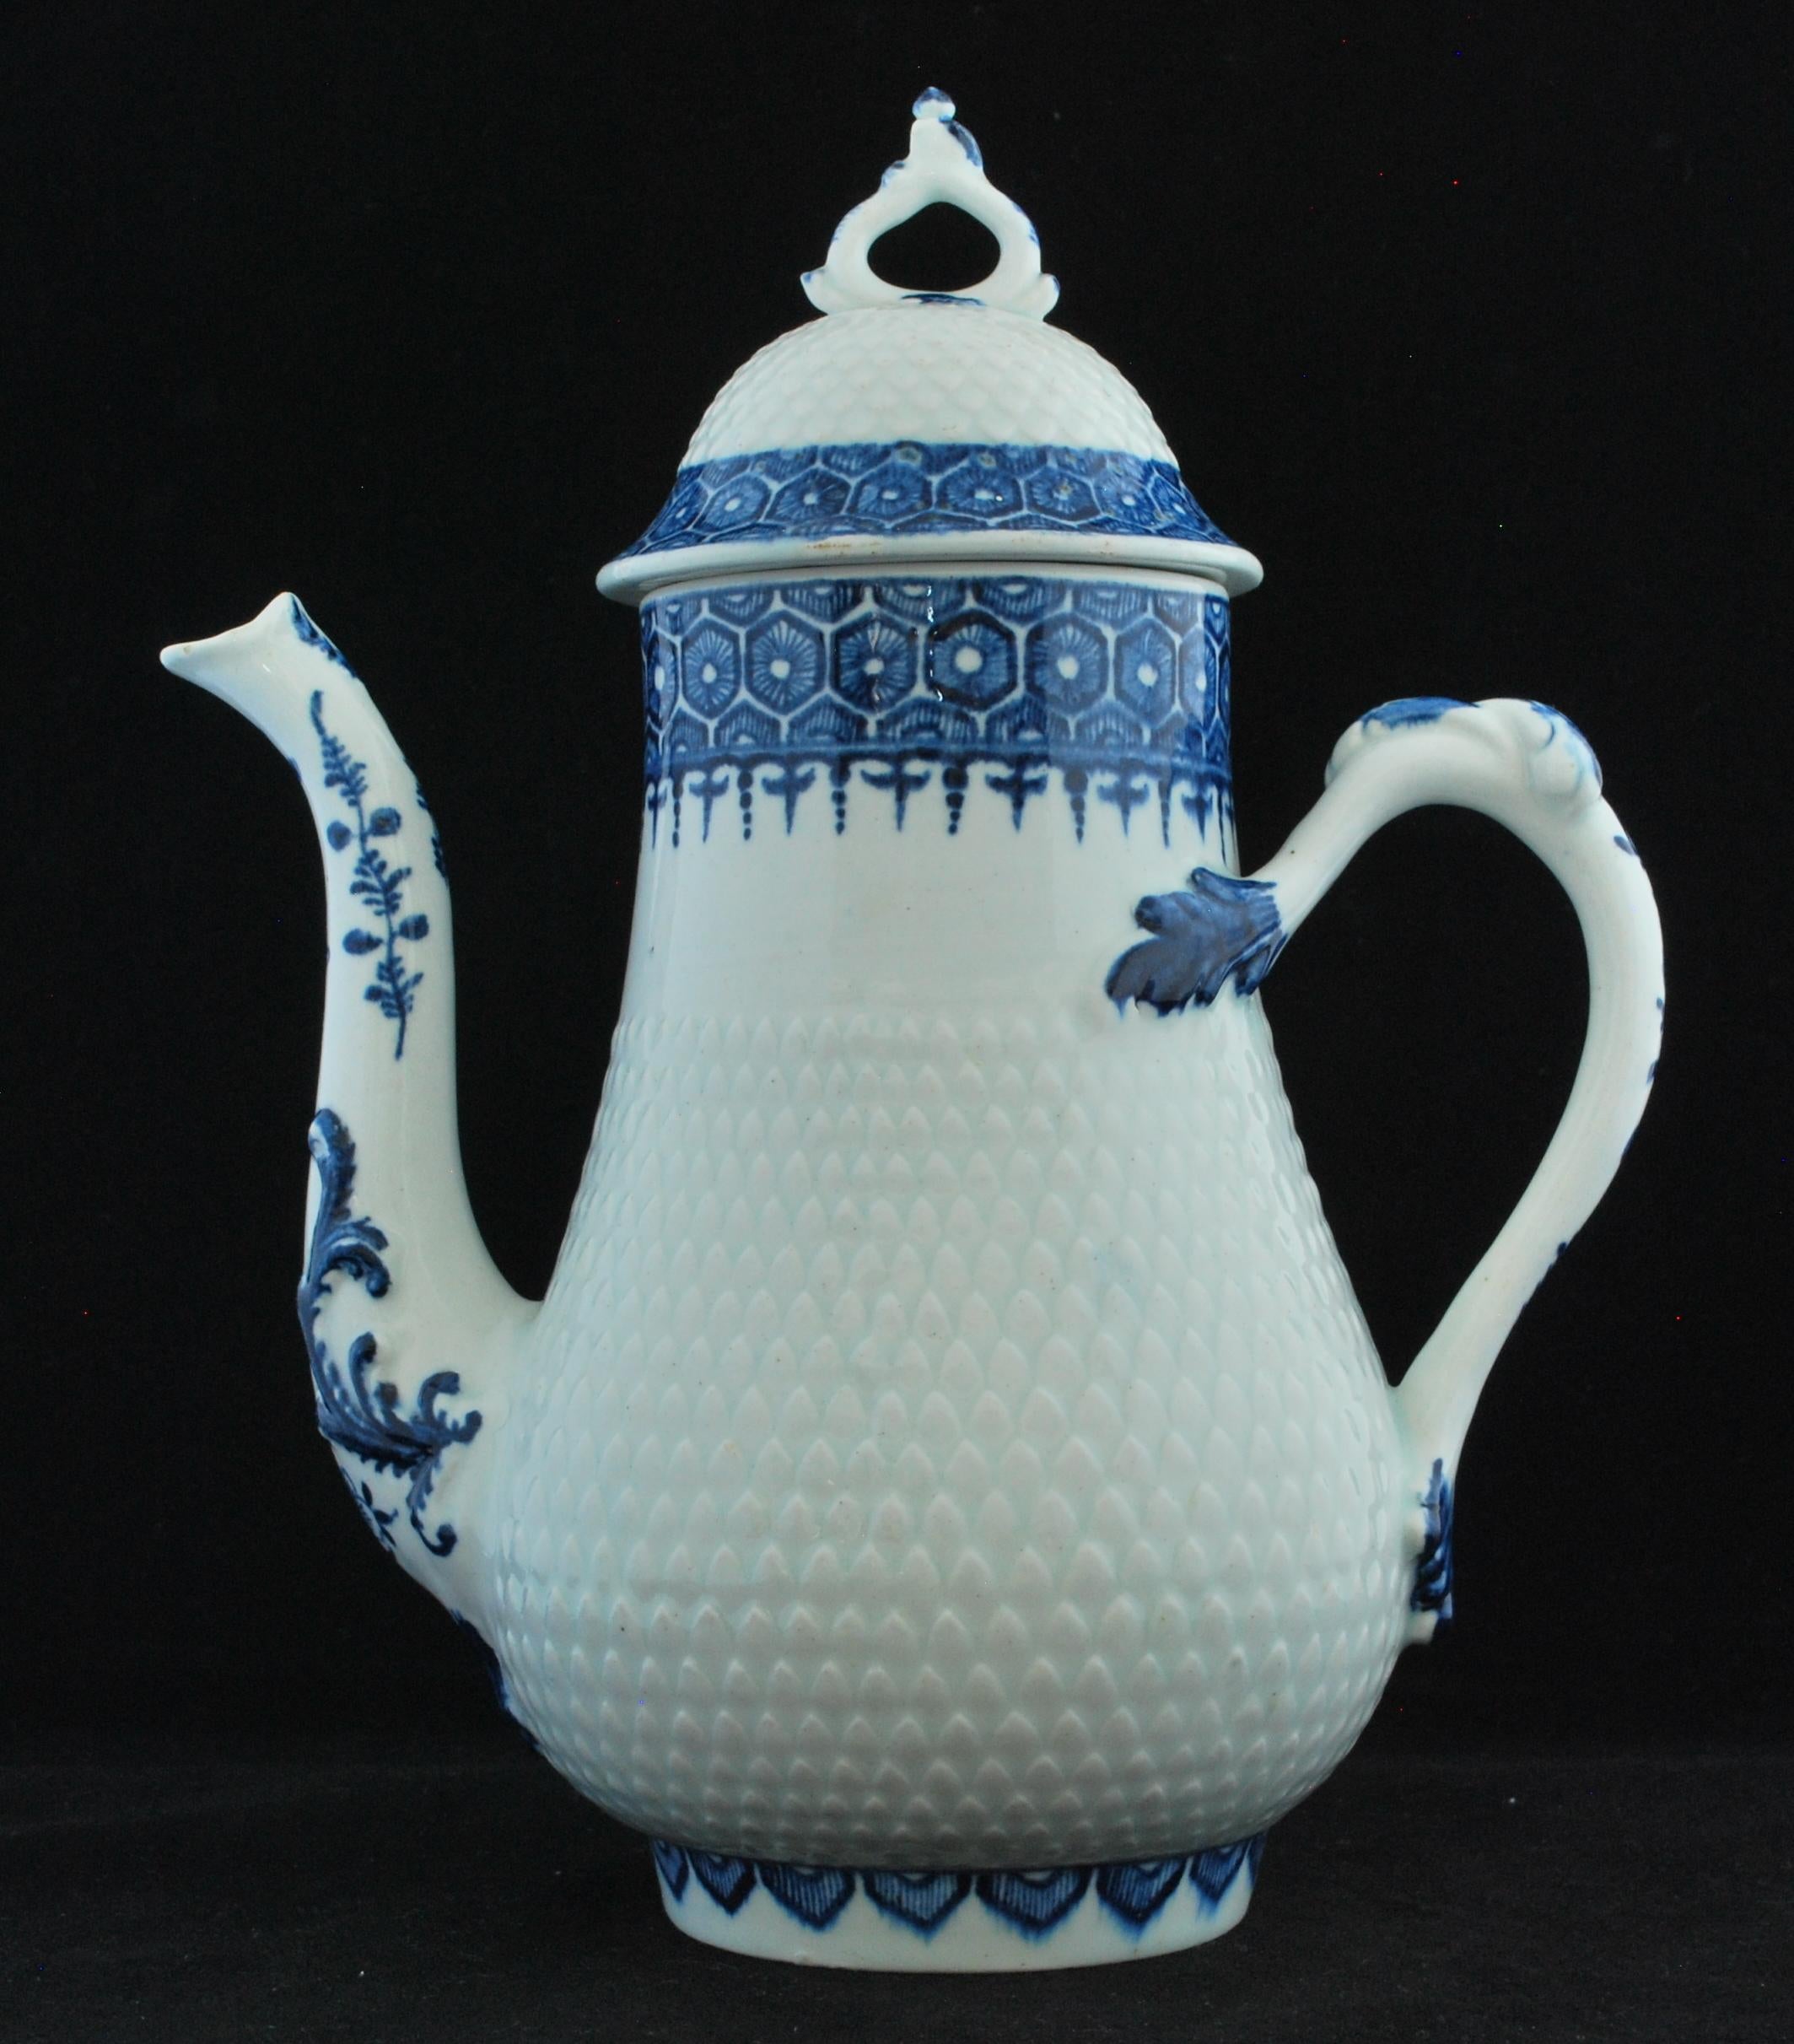 Kaffeekanne, um 1765-69: Kaffeekanne und Deckel in Silberform mit gewölbtem Deckel; Korpus der Kanne und Kuppel des Deckels in Ananasform zwischen blau bemalten Rändern mit Zellen- und Windelbordüren; Ausguss in geschwungener Schwanenhalsform mit